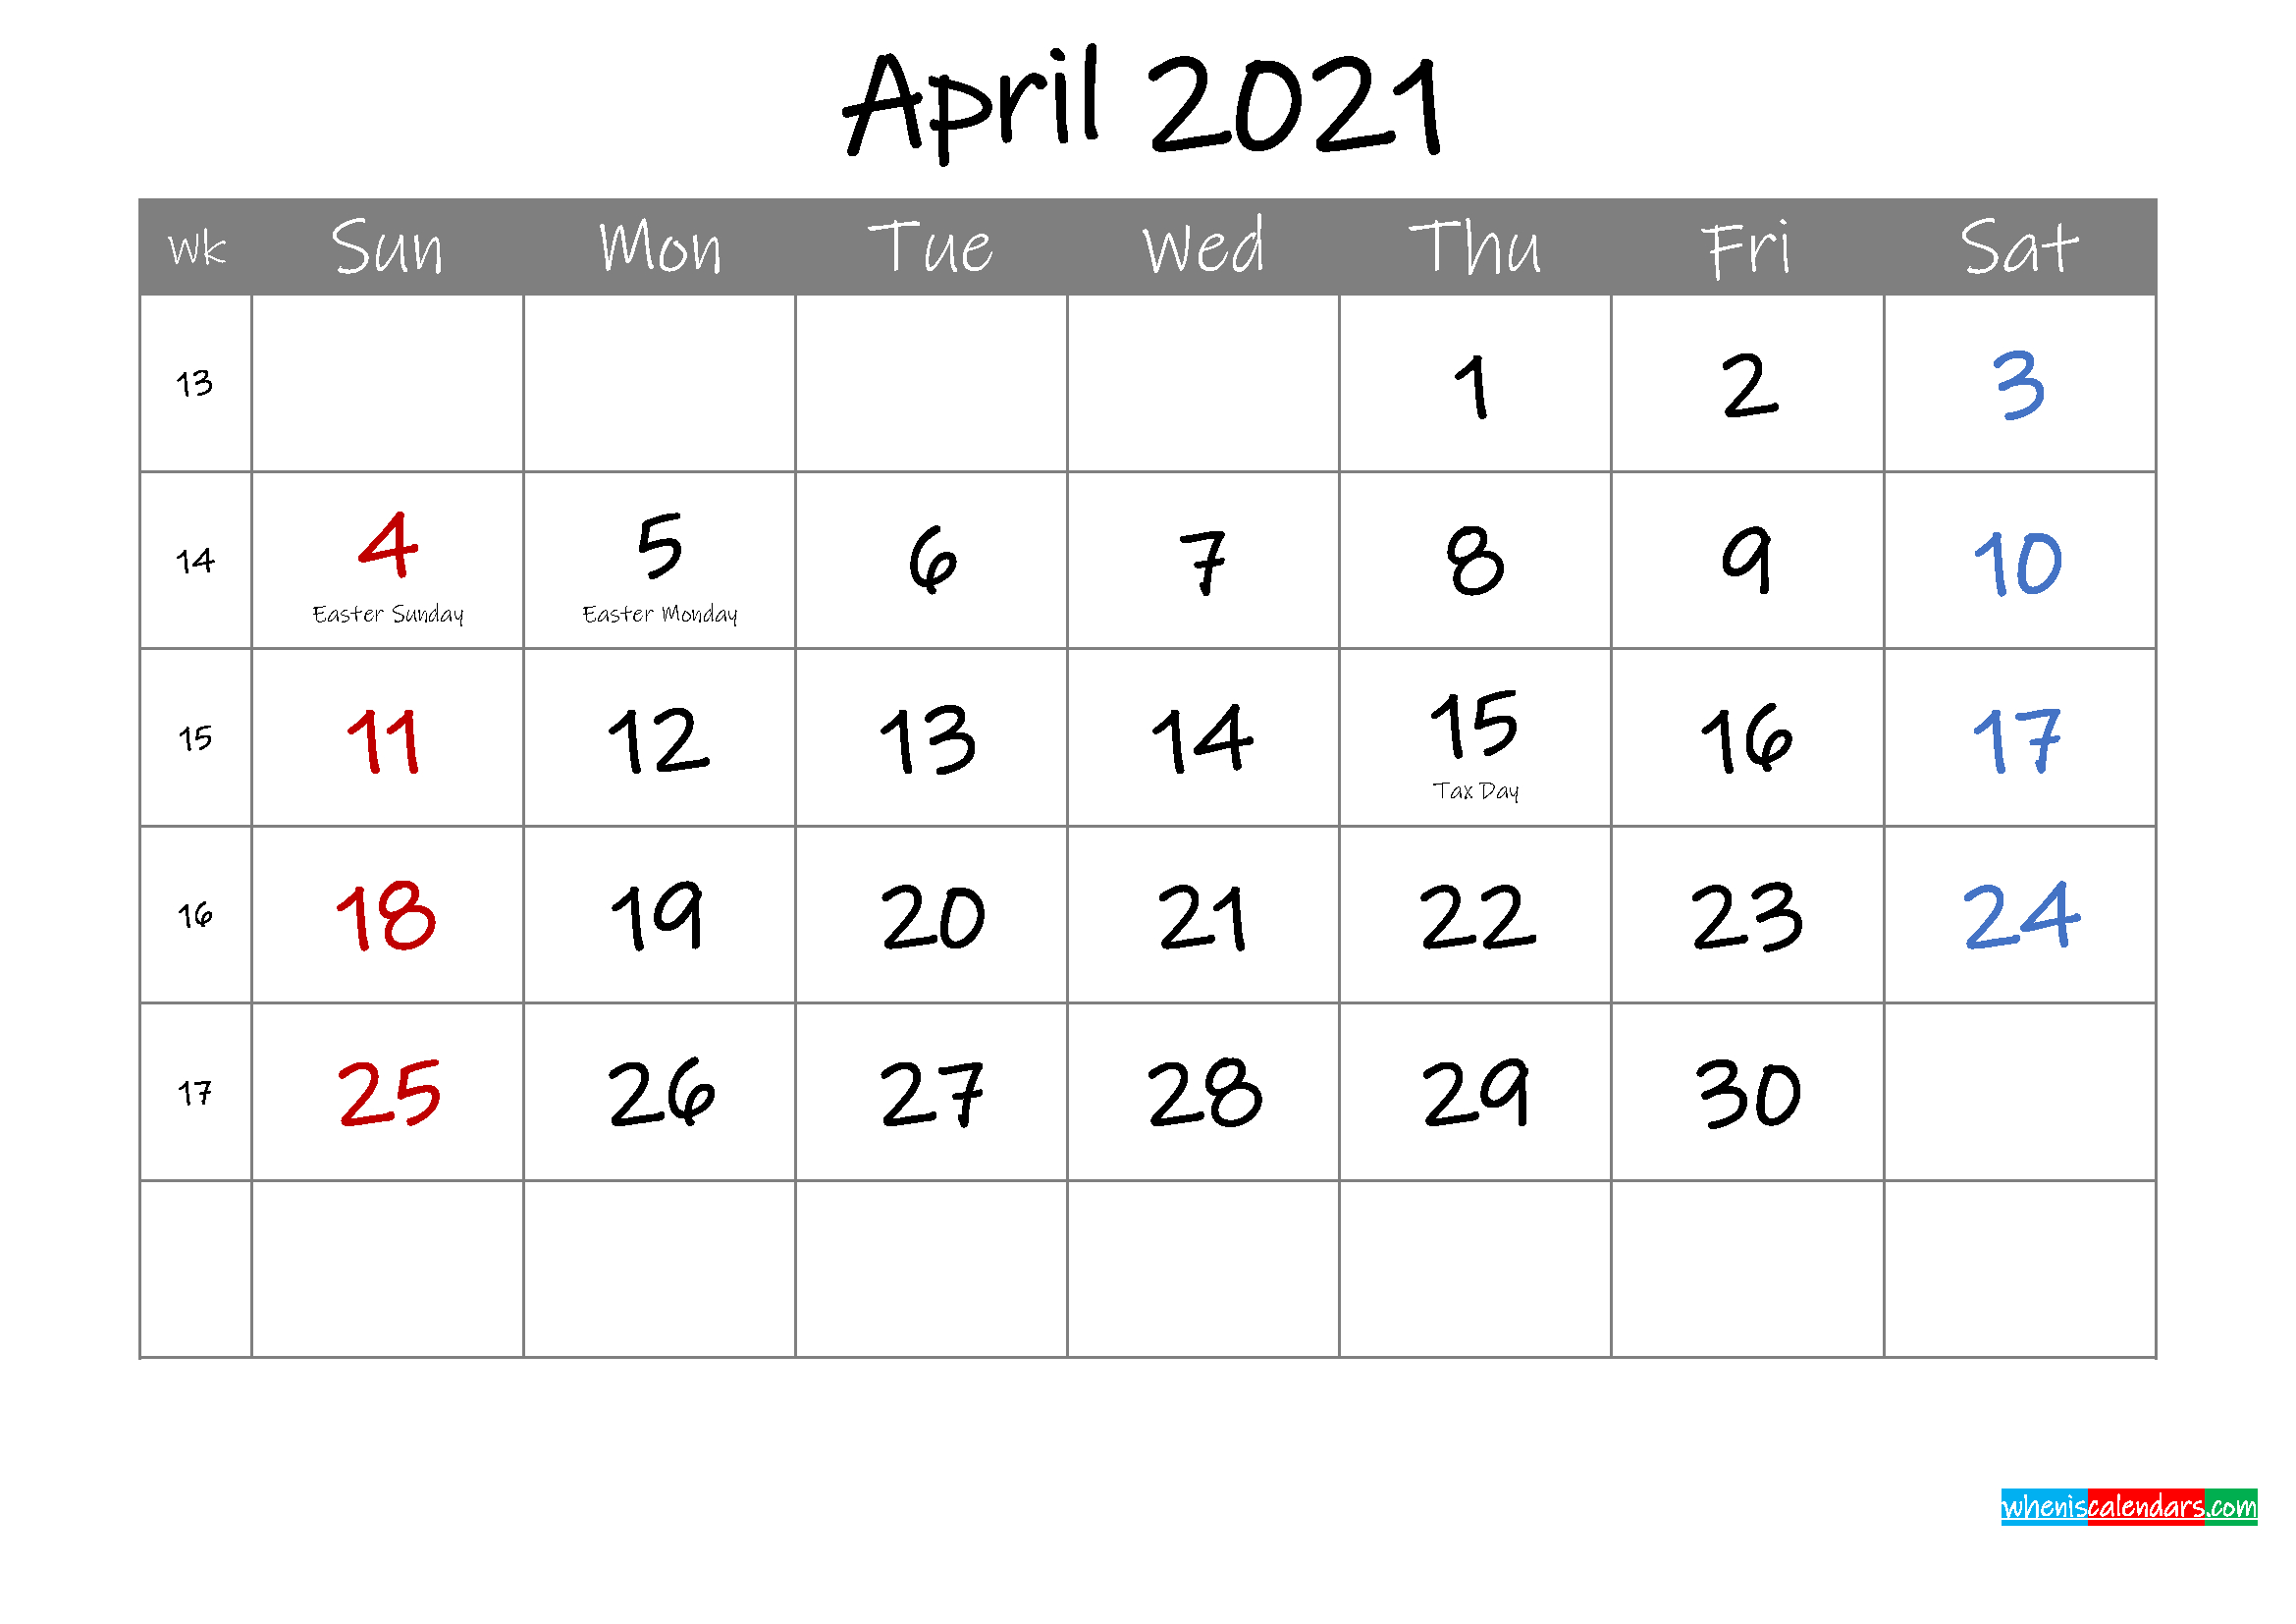 Editable April 2021 Calendar With Holidays - Template April To December 2021 Calendar